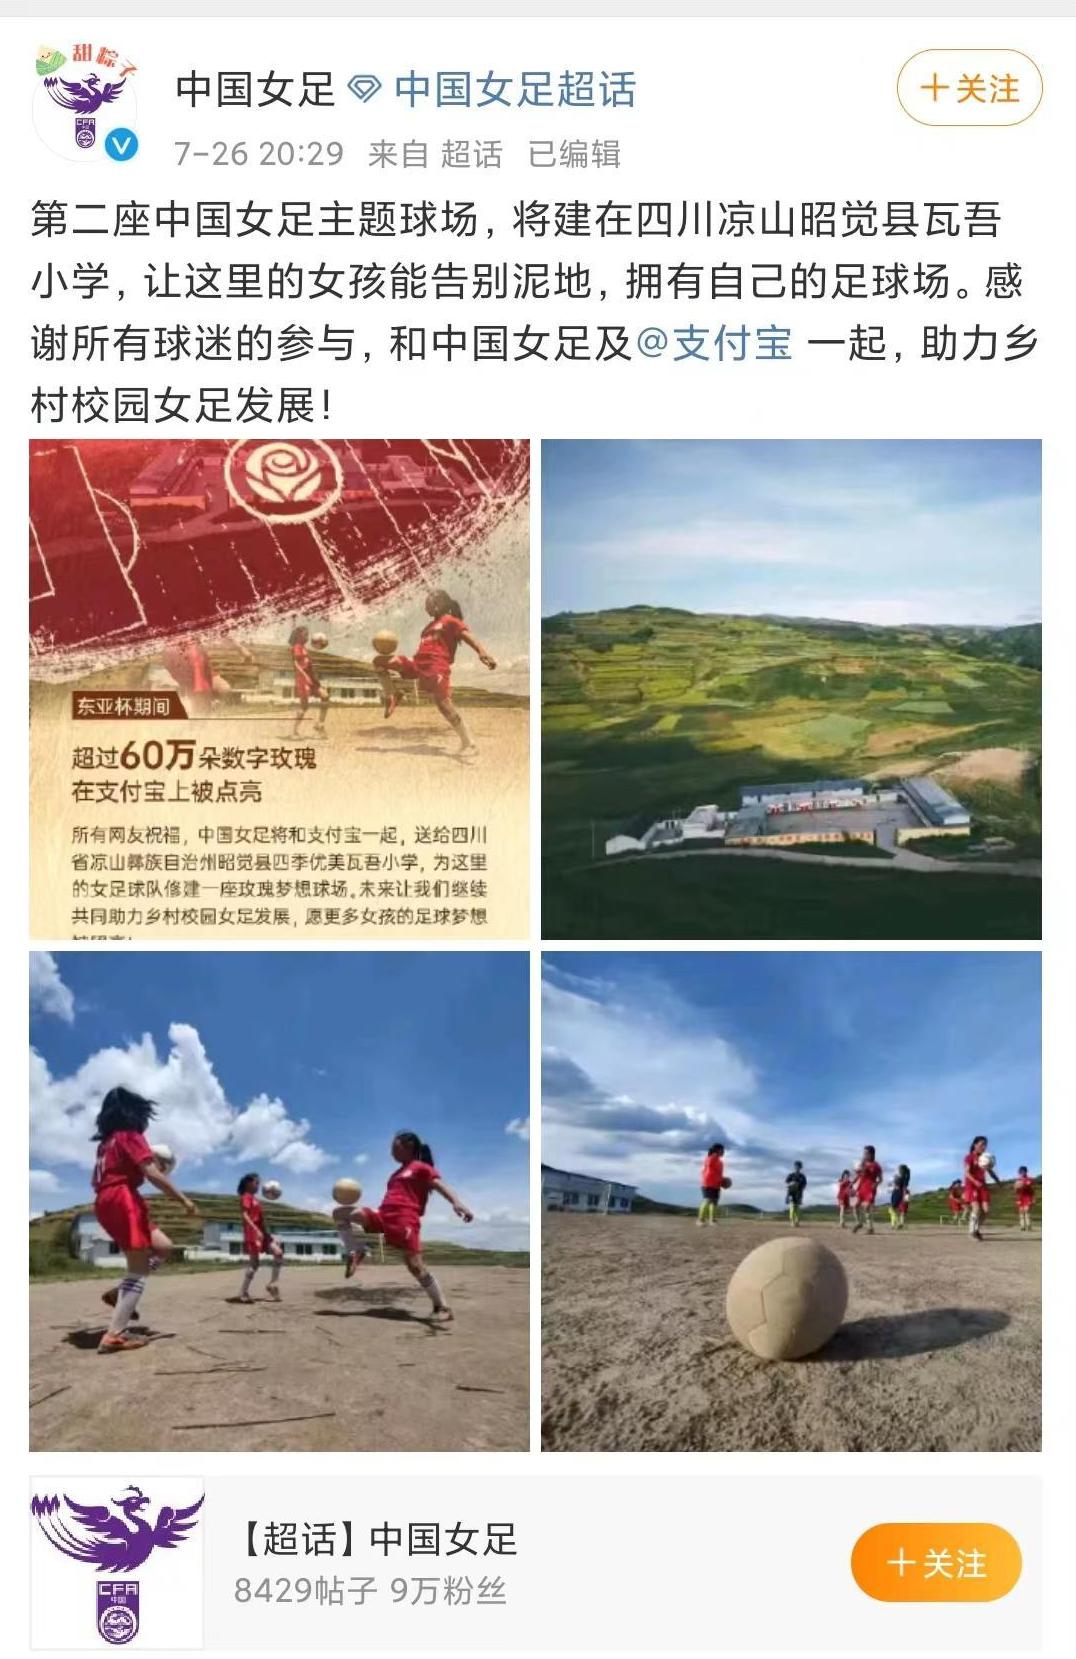 第二座中国女足主题球场将建在凉山瓦吾小学 校长：超半数学生在踢球，28名女球员每天训练(1)